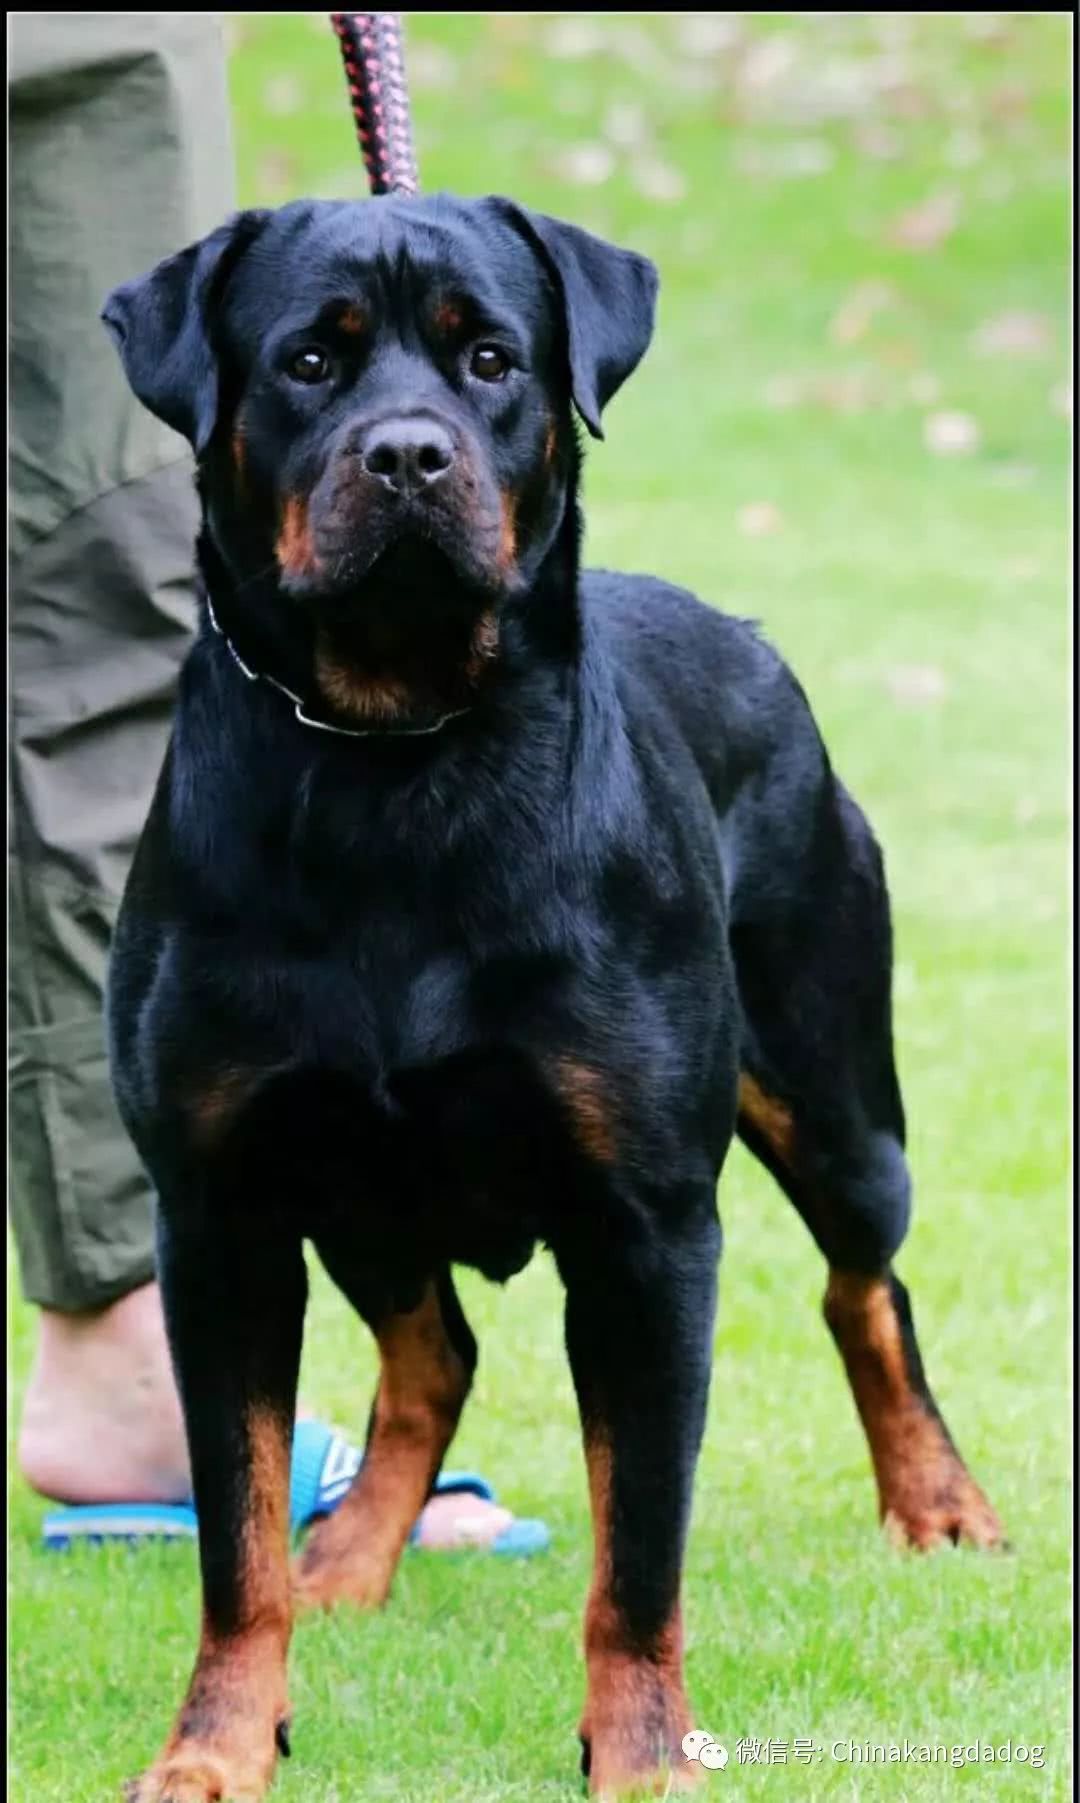 罗威纳犬纯黑图片